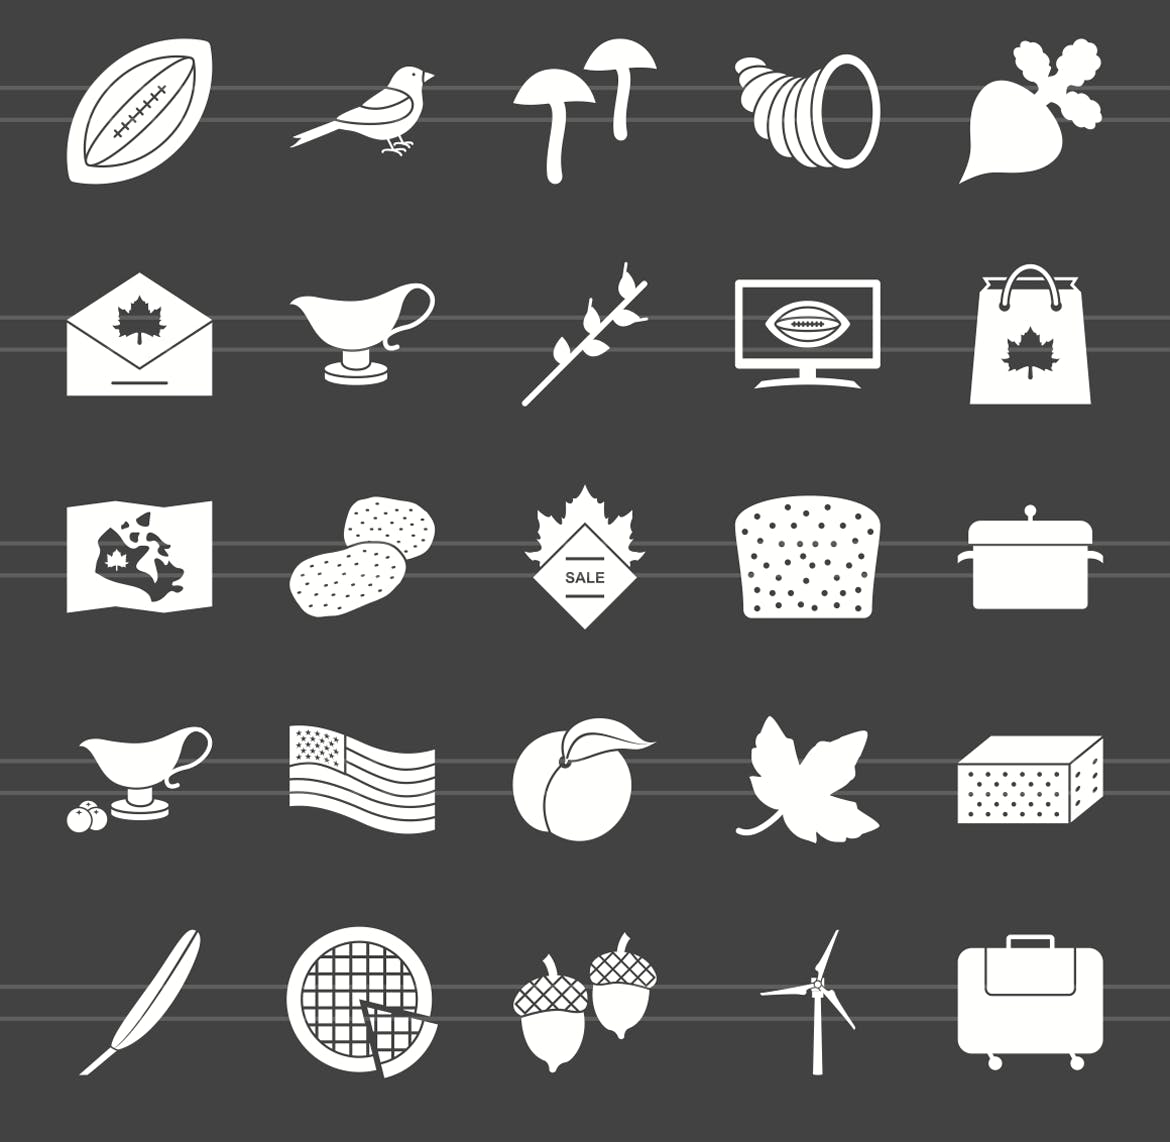 50枚感恩节主题反转色矢量字体蚂蚁素材精选图标 50 Thanksgiving Glyph Inverted Icons插图(2)